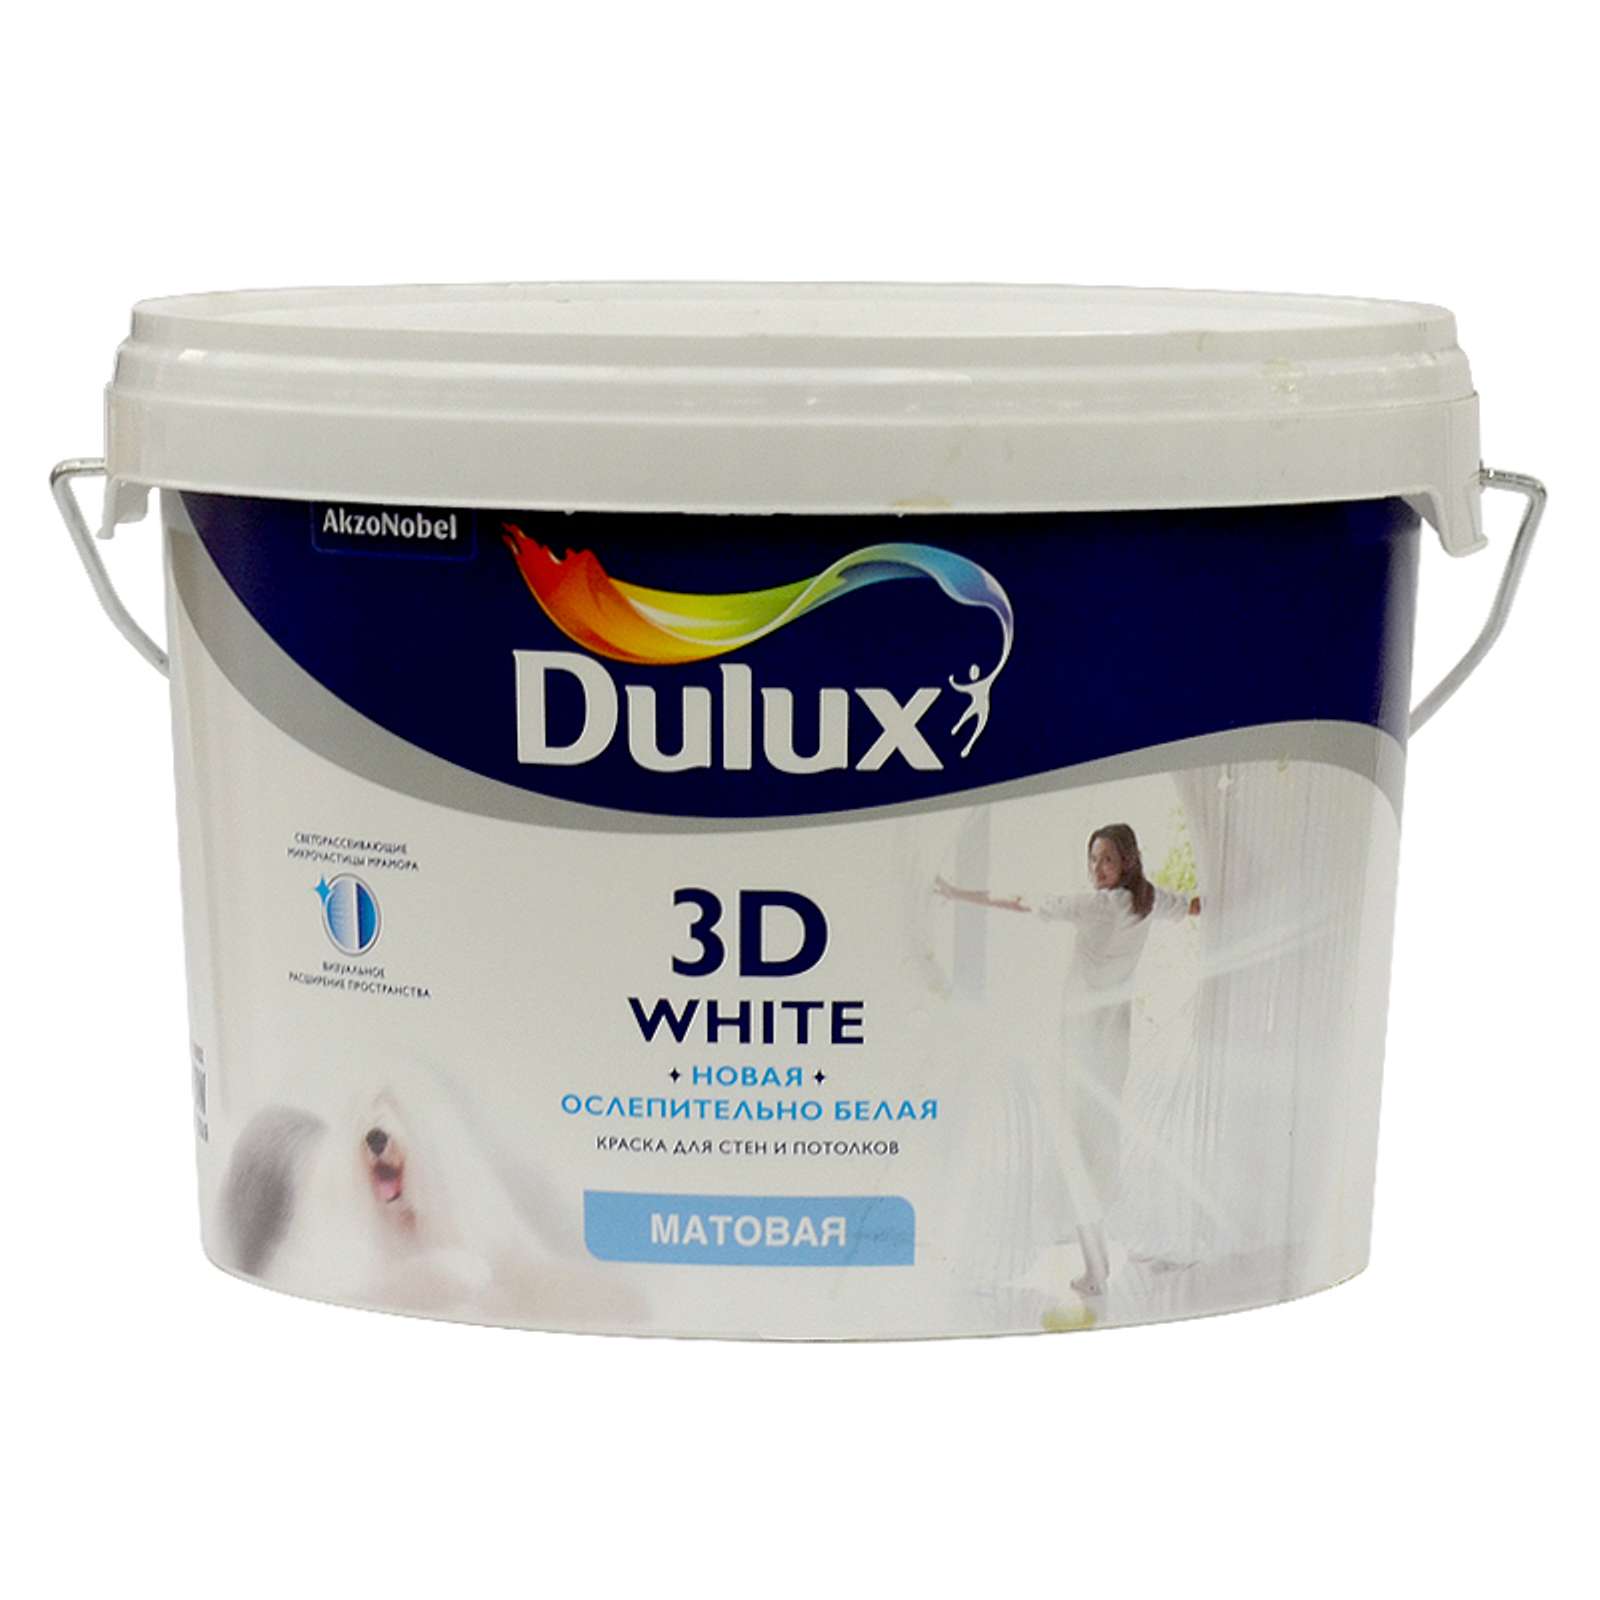 Dulux 3d White 10л